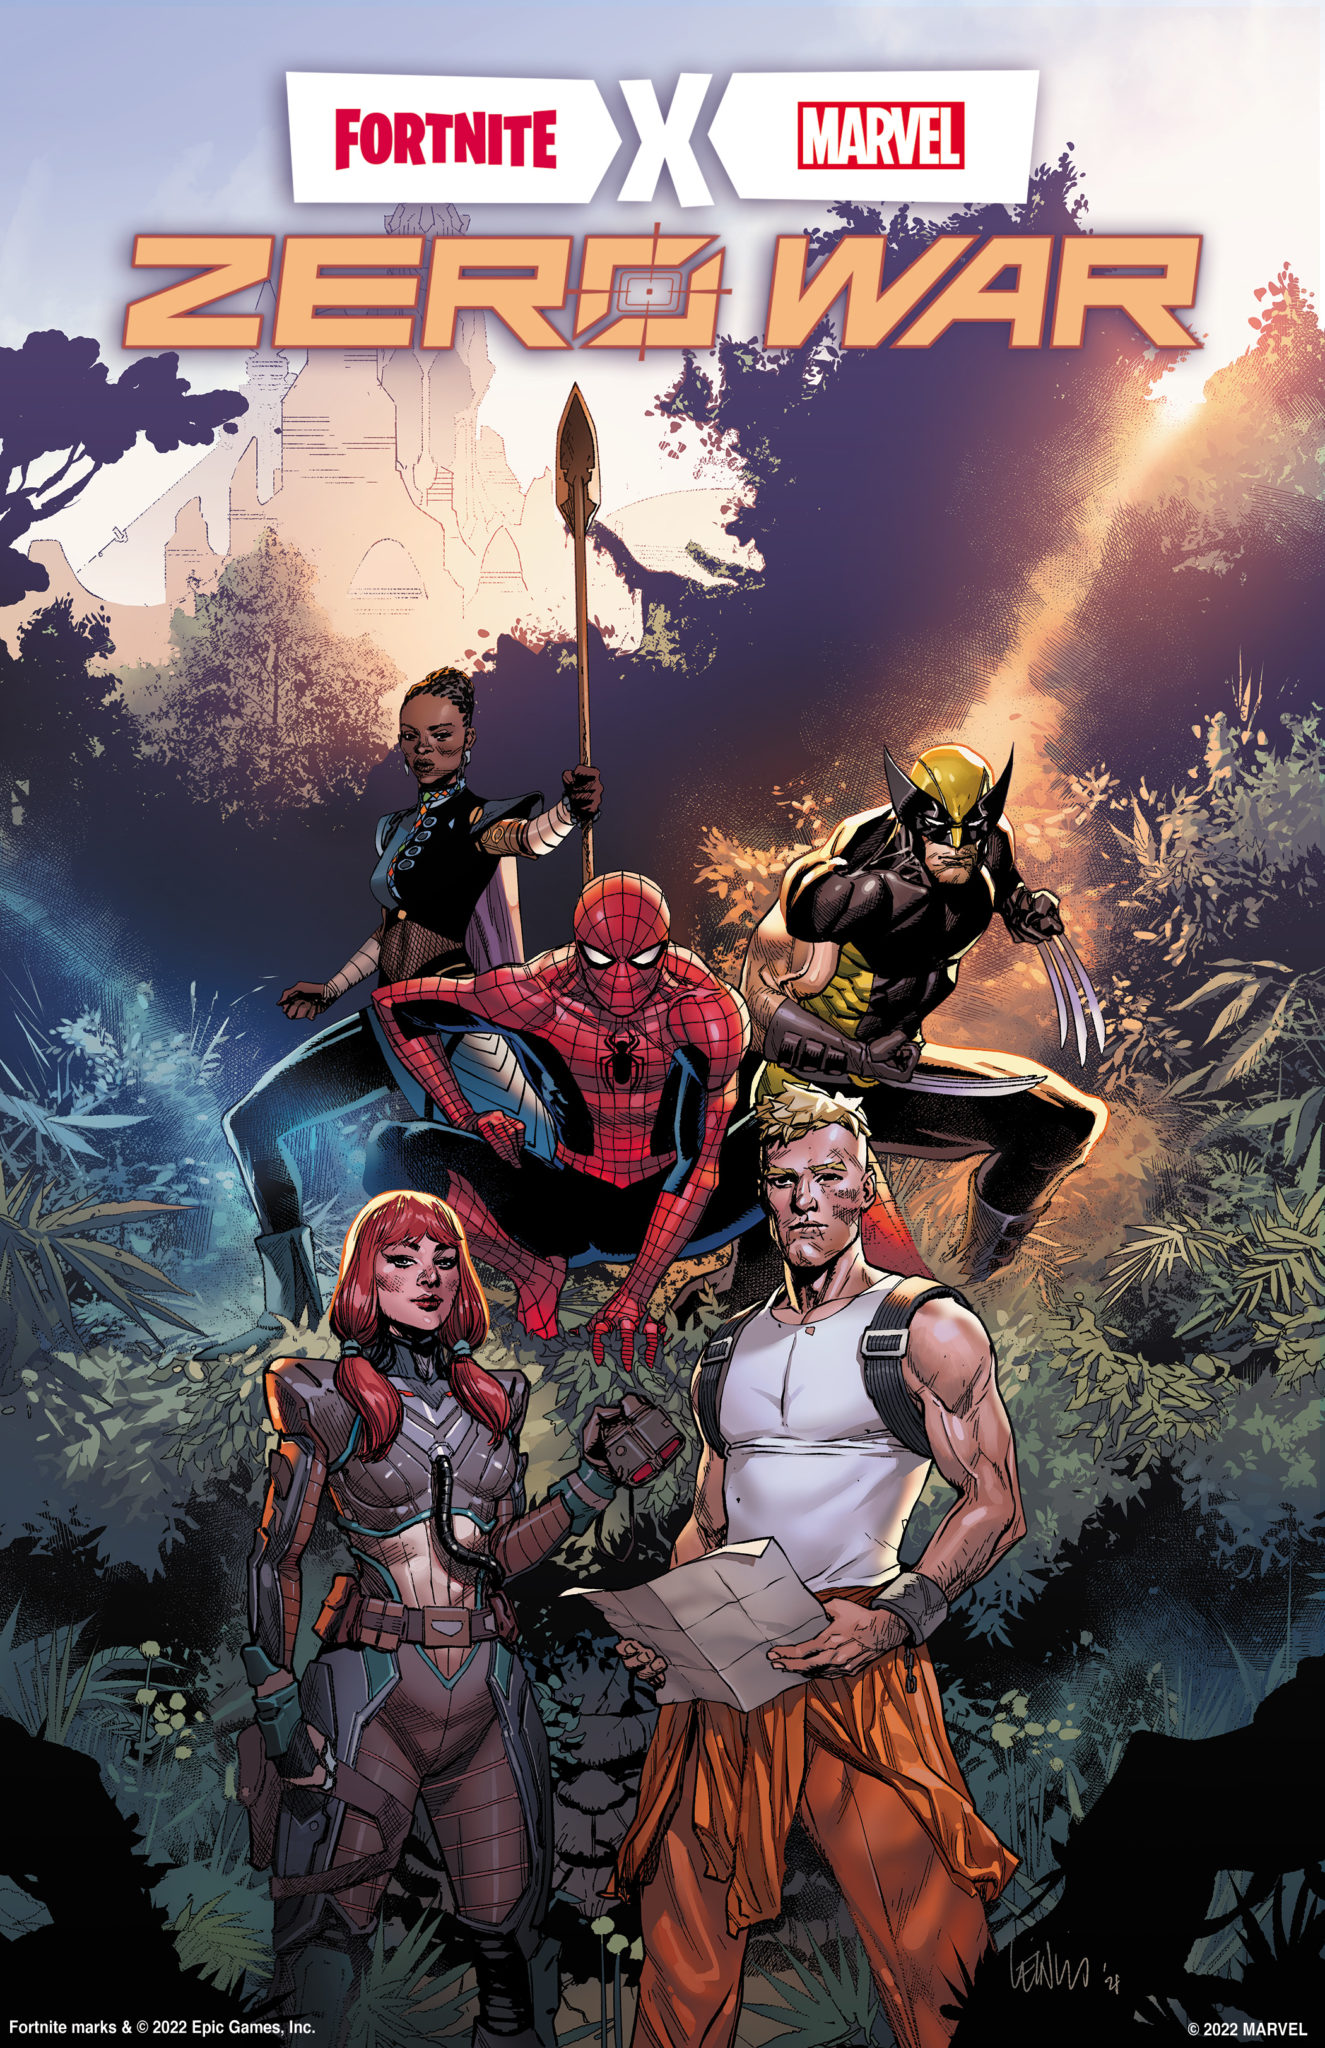 Fortnite X Marvel Zero War cover art